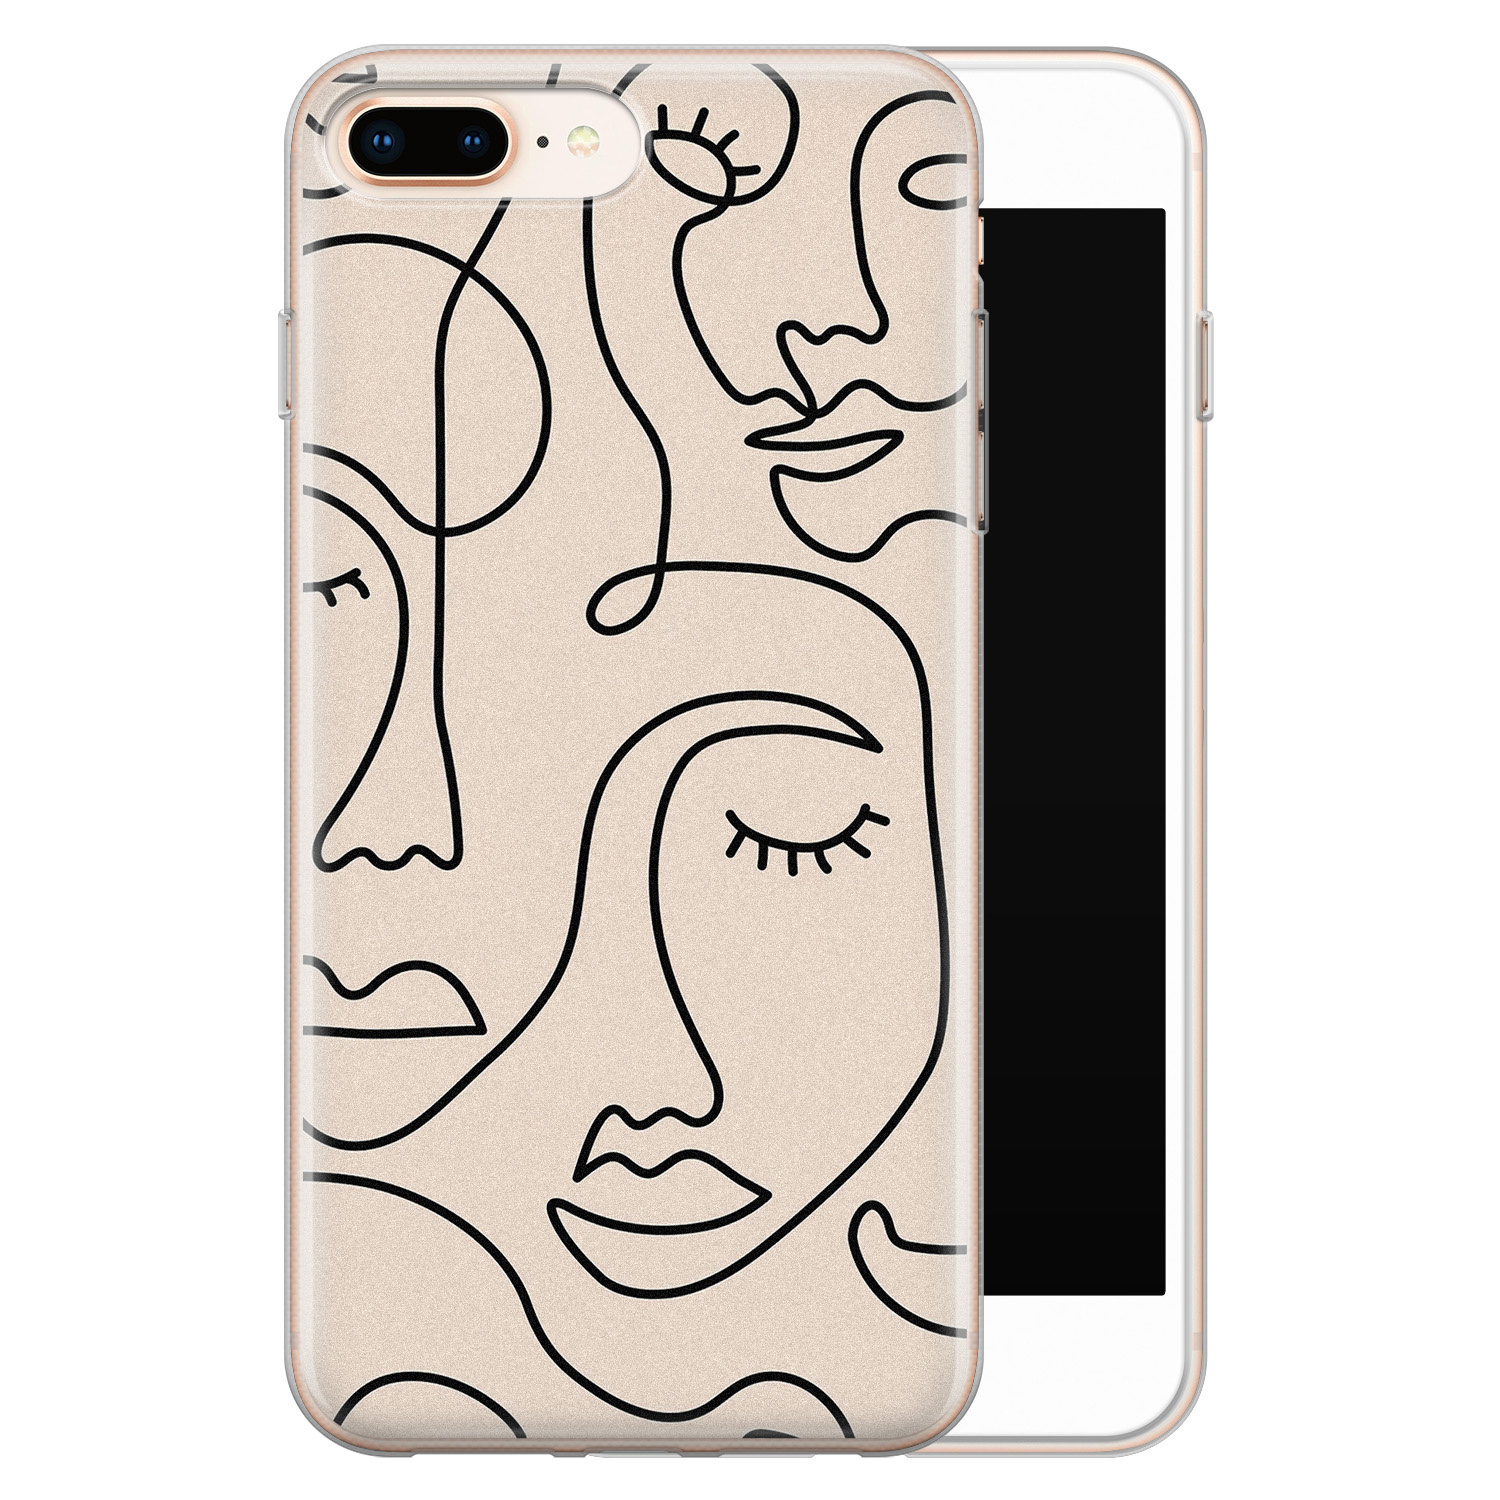 Leuke Telefoonhoesjes iPhone 8 Plus/7 Plus siliconen hoesje - Abstract gezicht lijnen